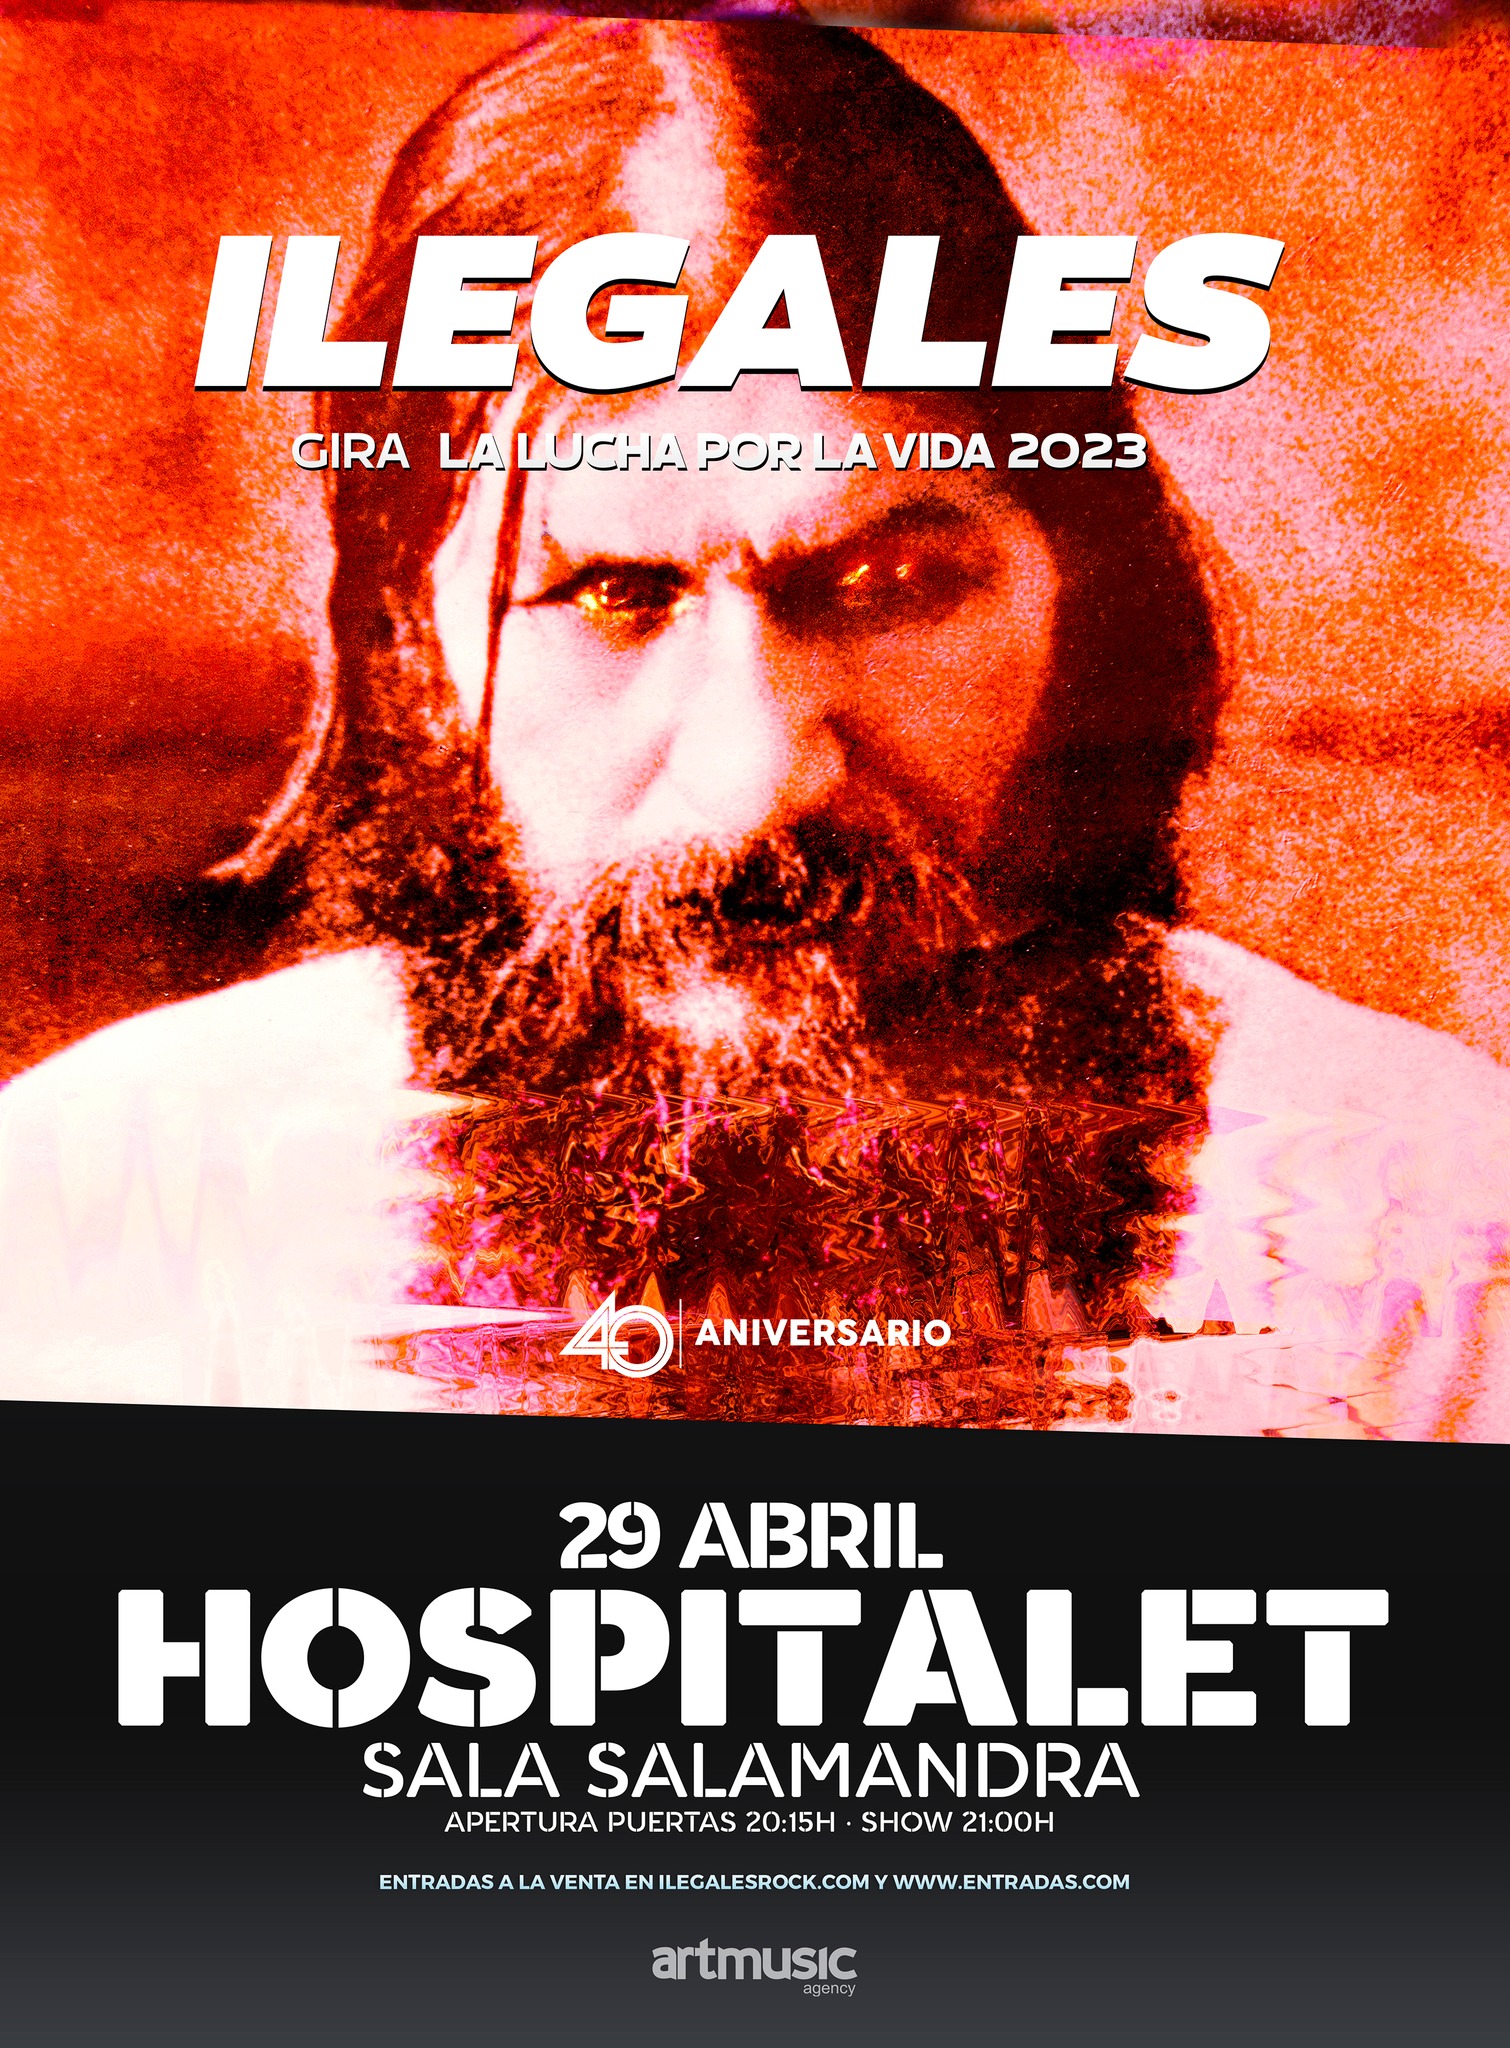 Ilegales estará actuando el 29 de abril en la sala Salamandra de L’ Hospitalet De Llobregat